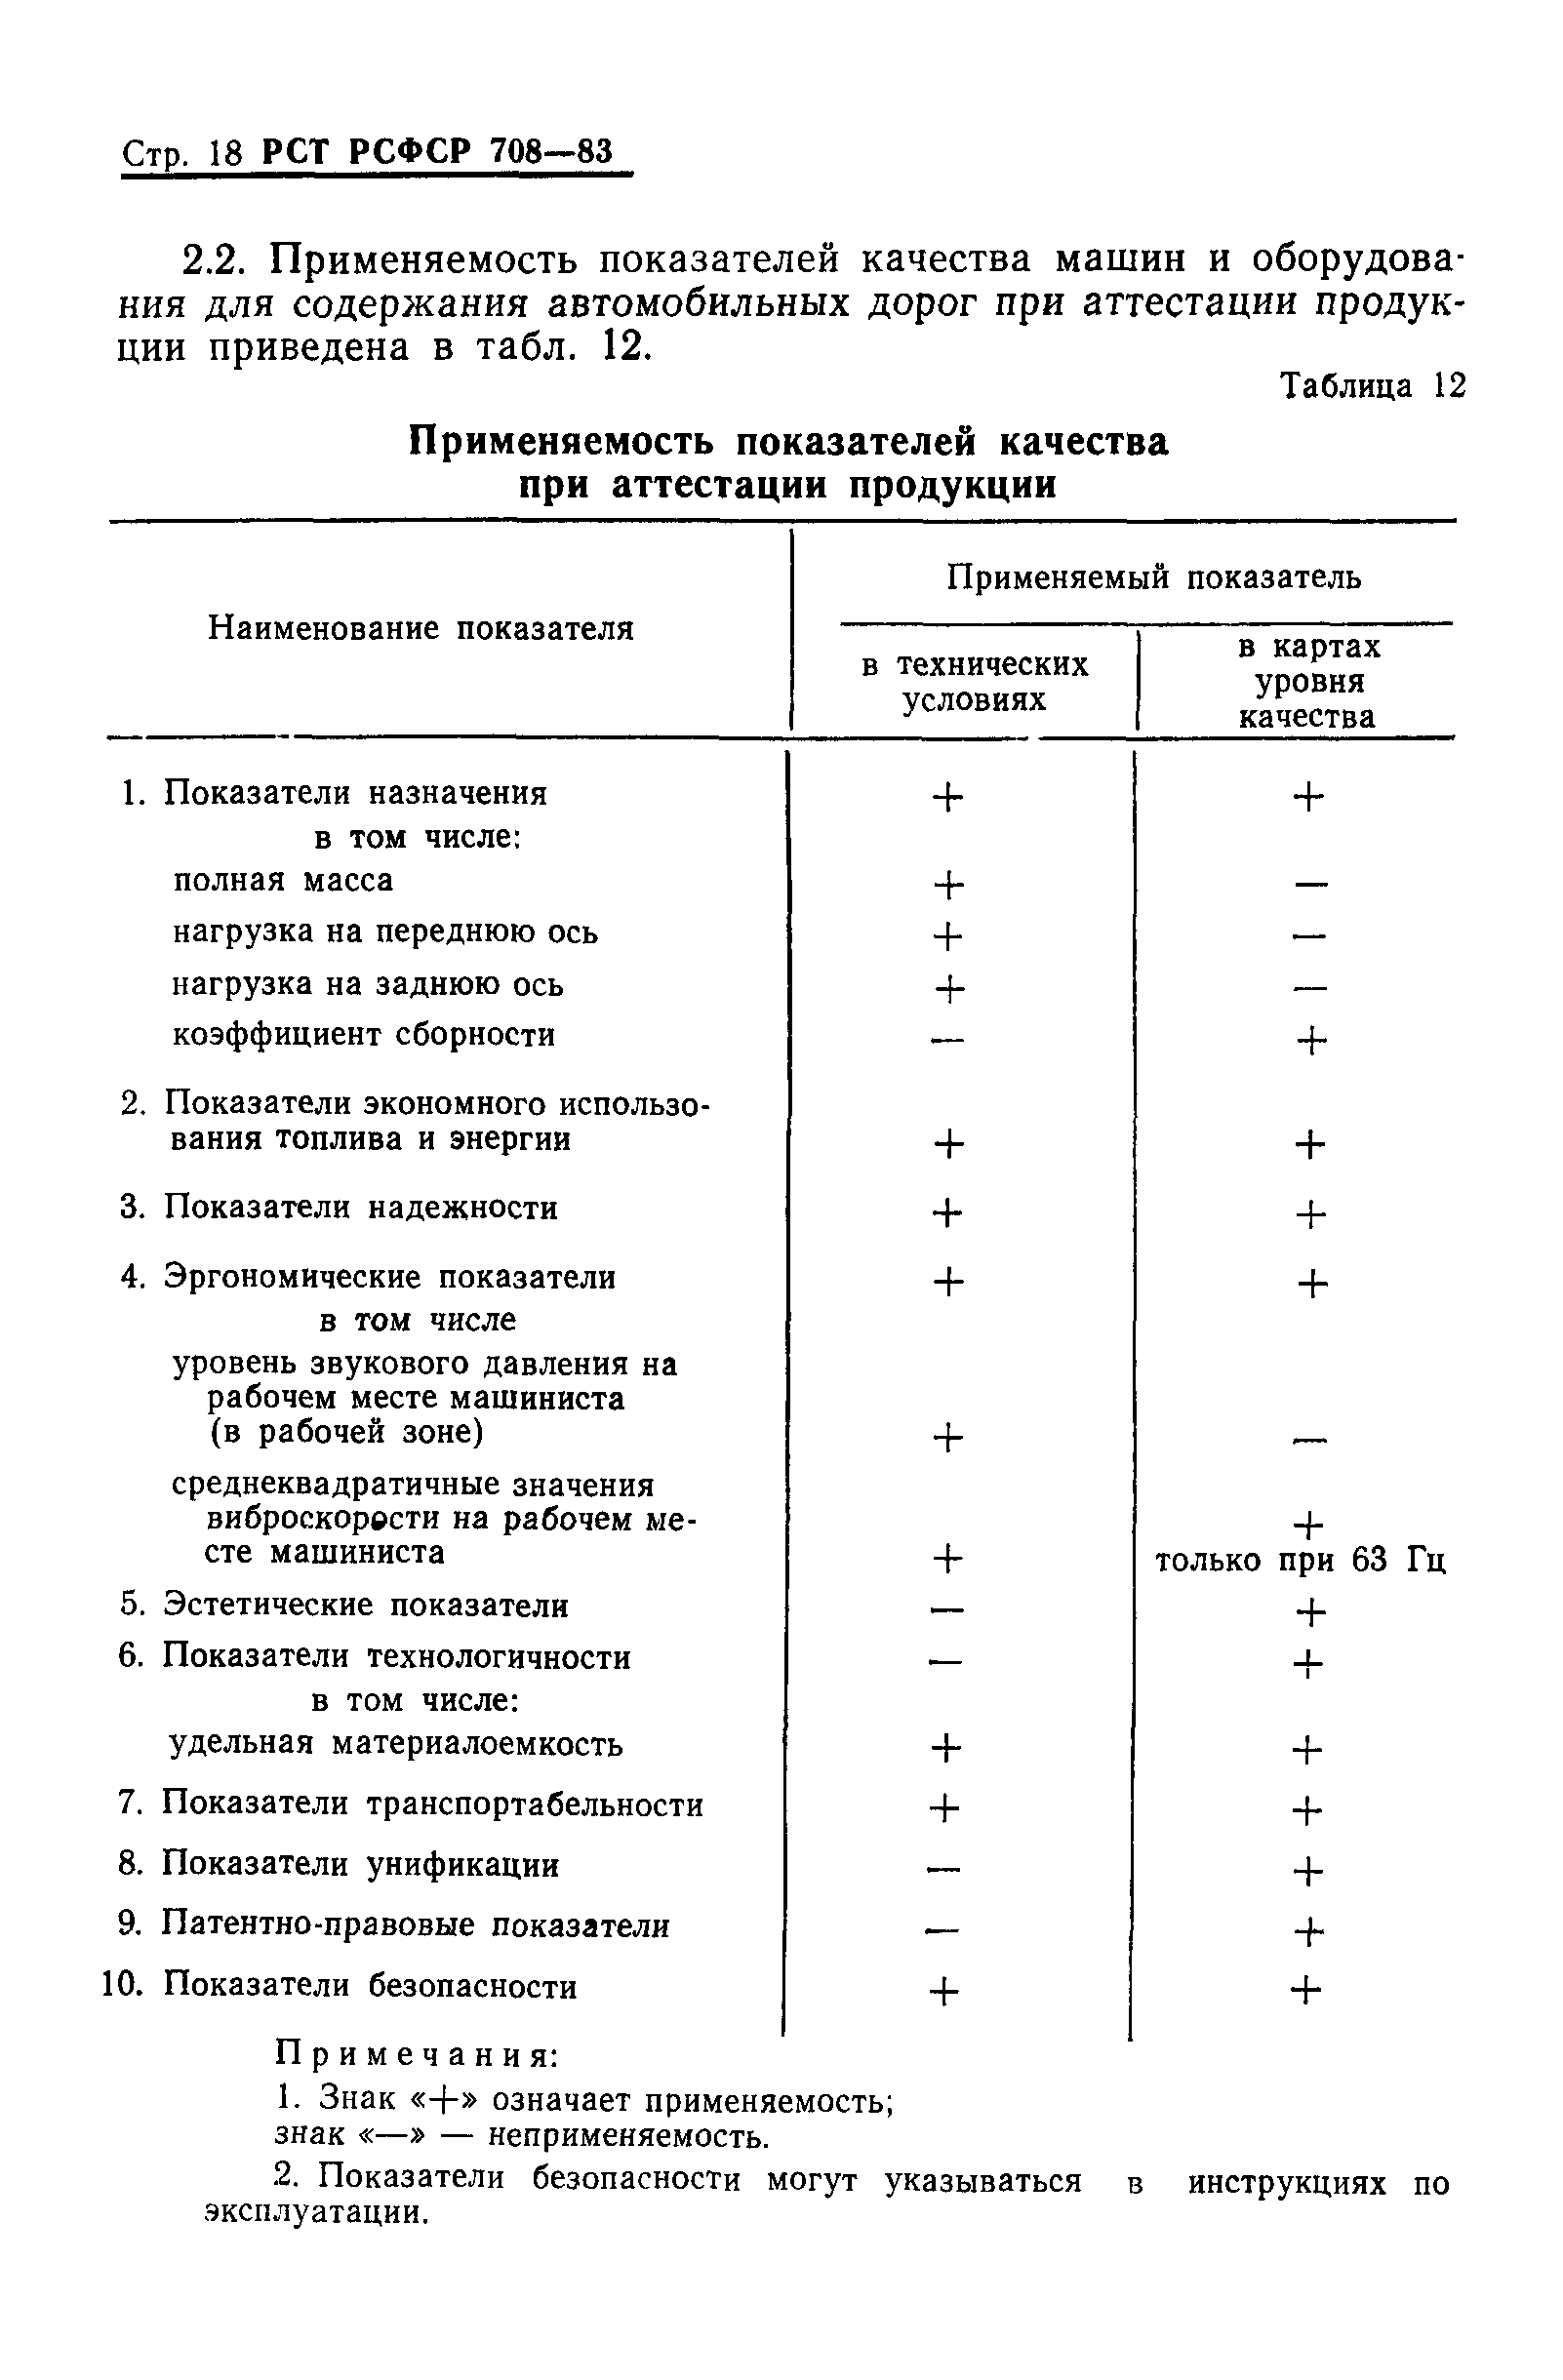 РСТ РСФСР 708-83